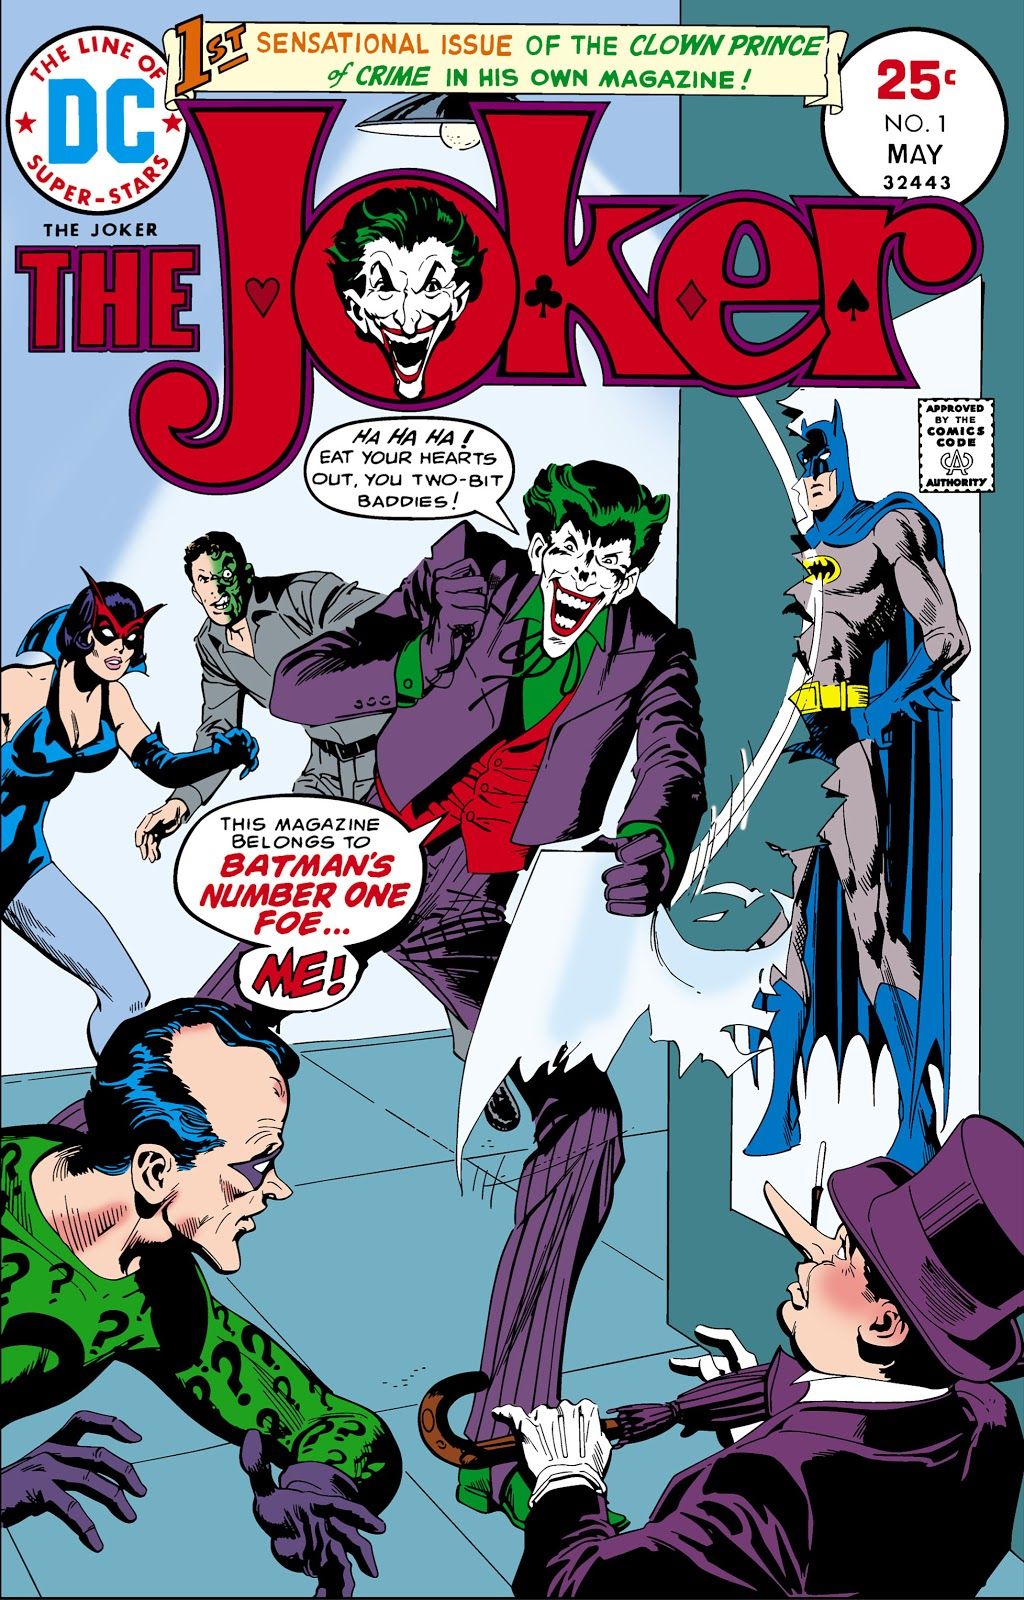 Portada del Joker #1